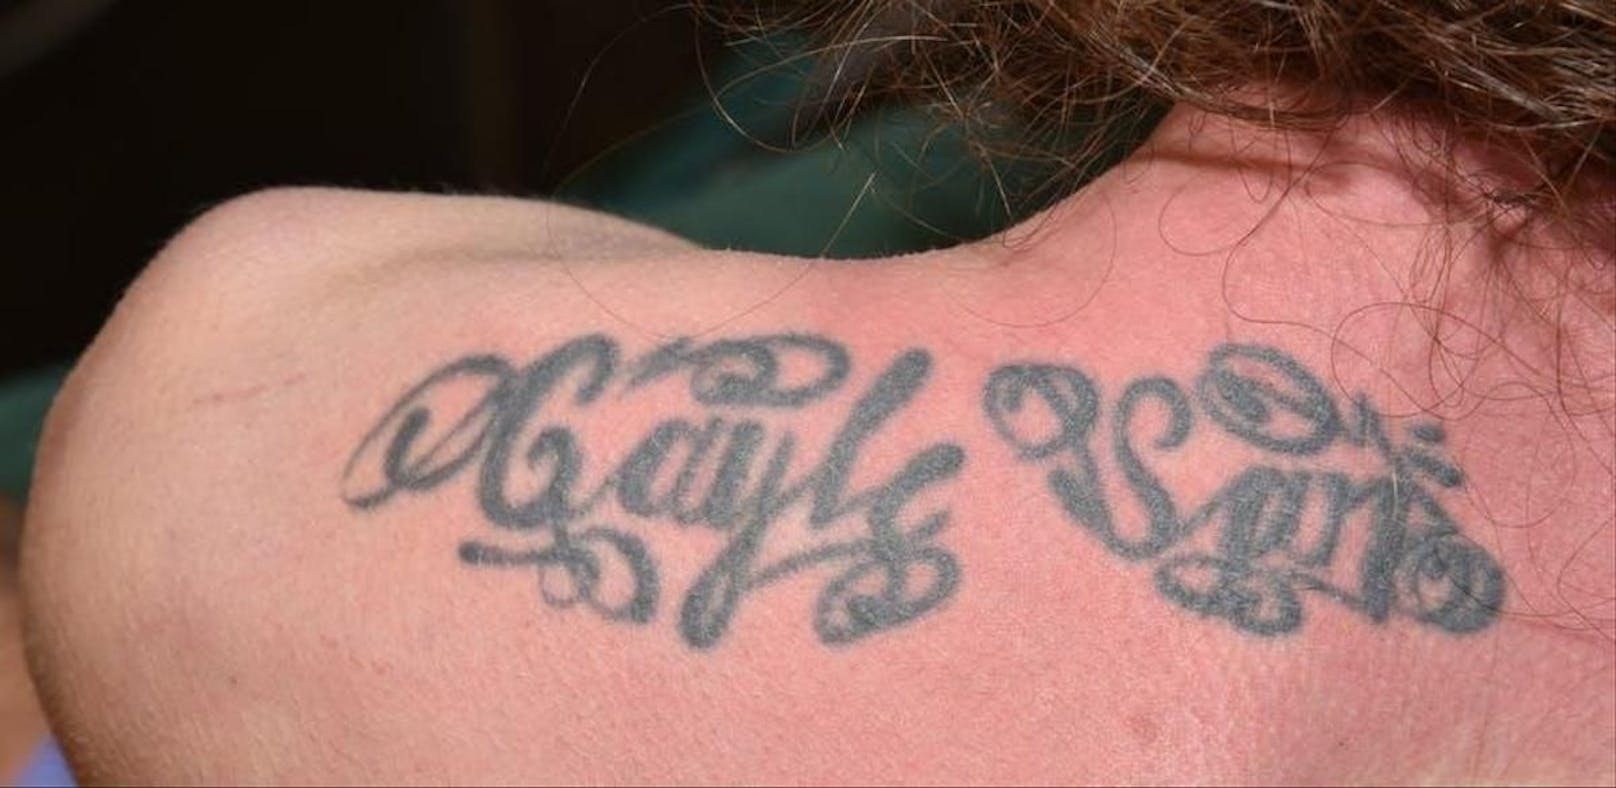 Auf dem Rücken hatte J. P. den Schriftzug: "Gayle San" tätowiert.